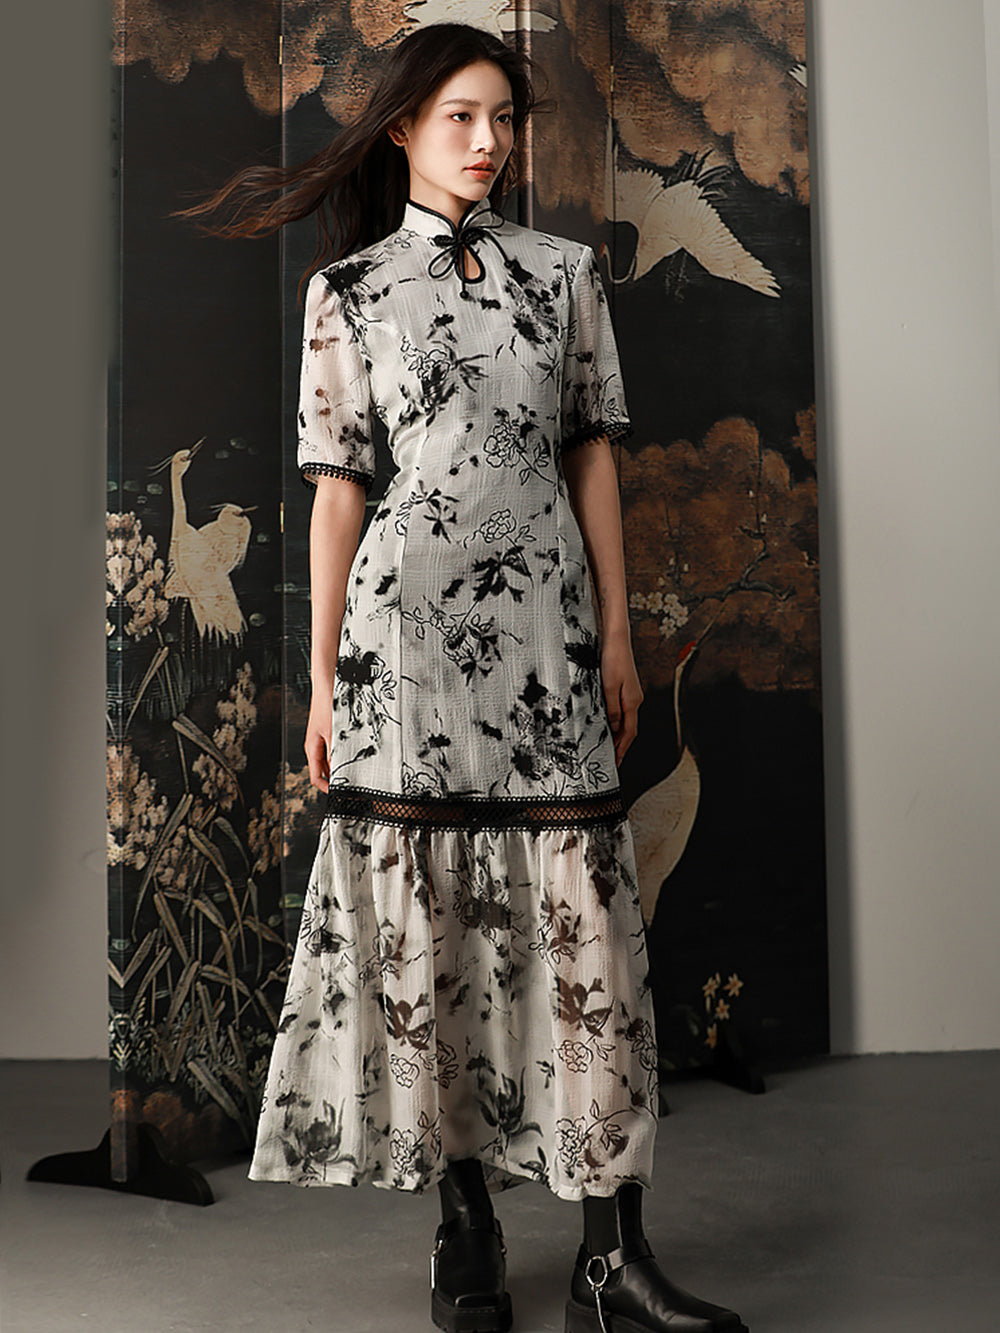 MUKTANK X CUUDICLAB Chiffon Qipao-Style Fish Tail Dress